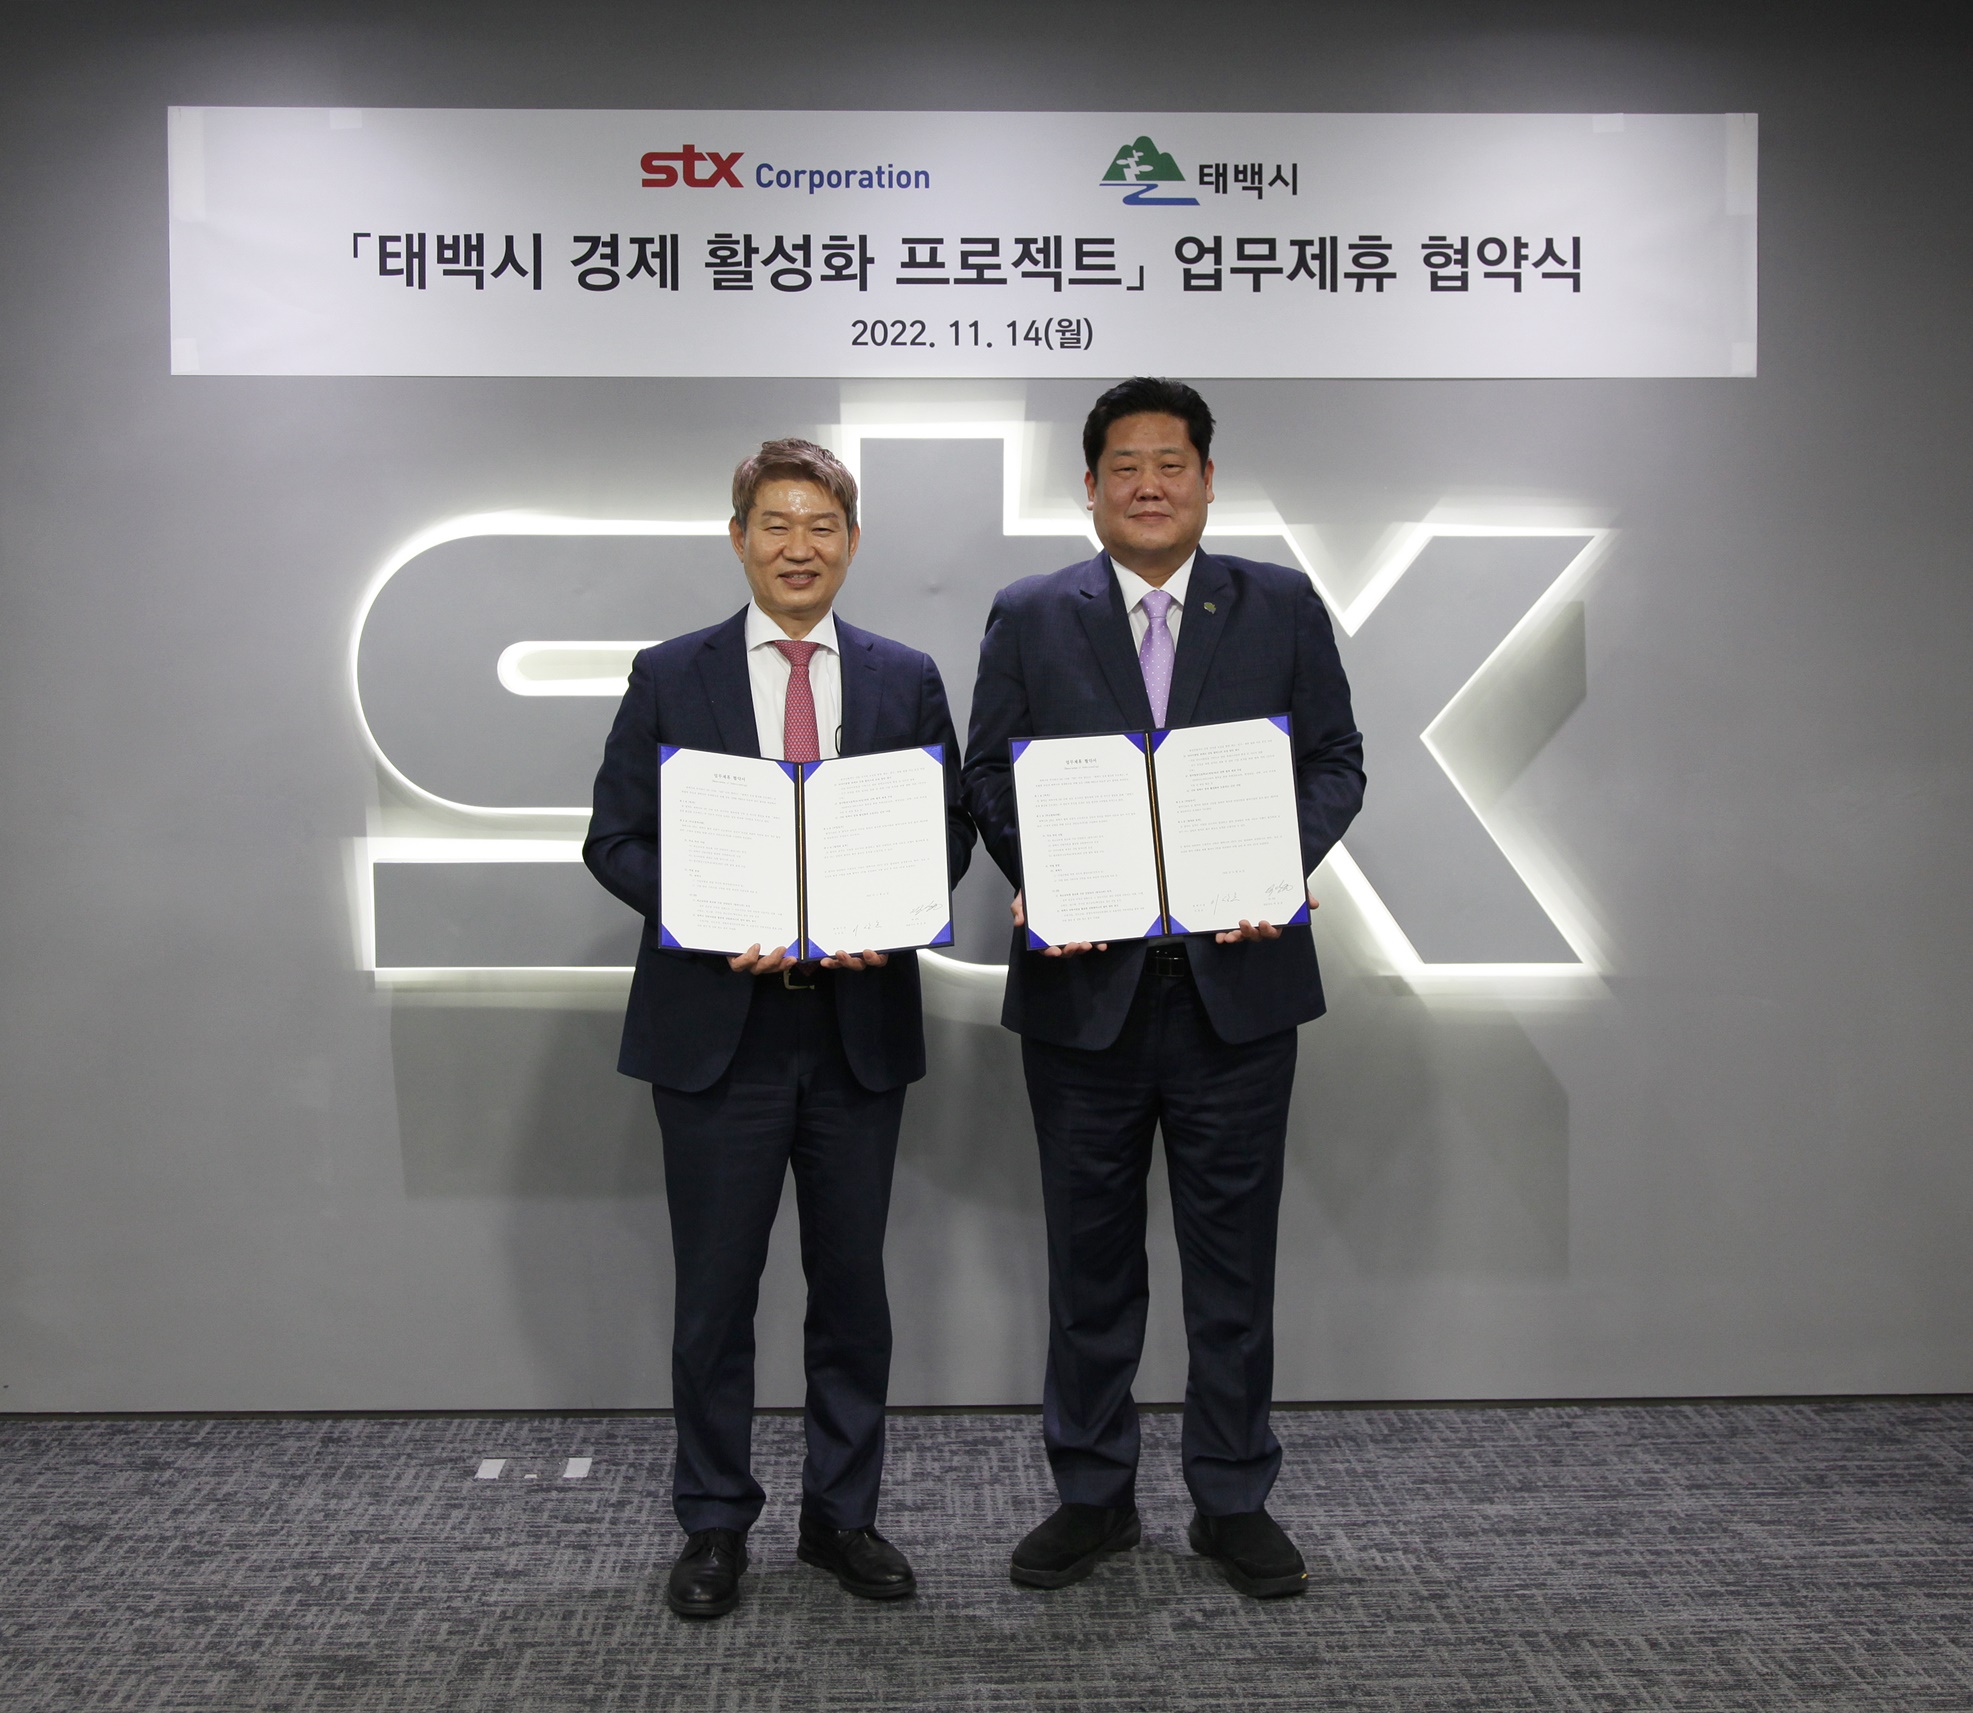 태백시-(주)STX '경제 활성화' 업무협약 체결